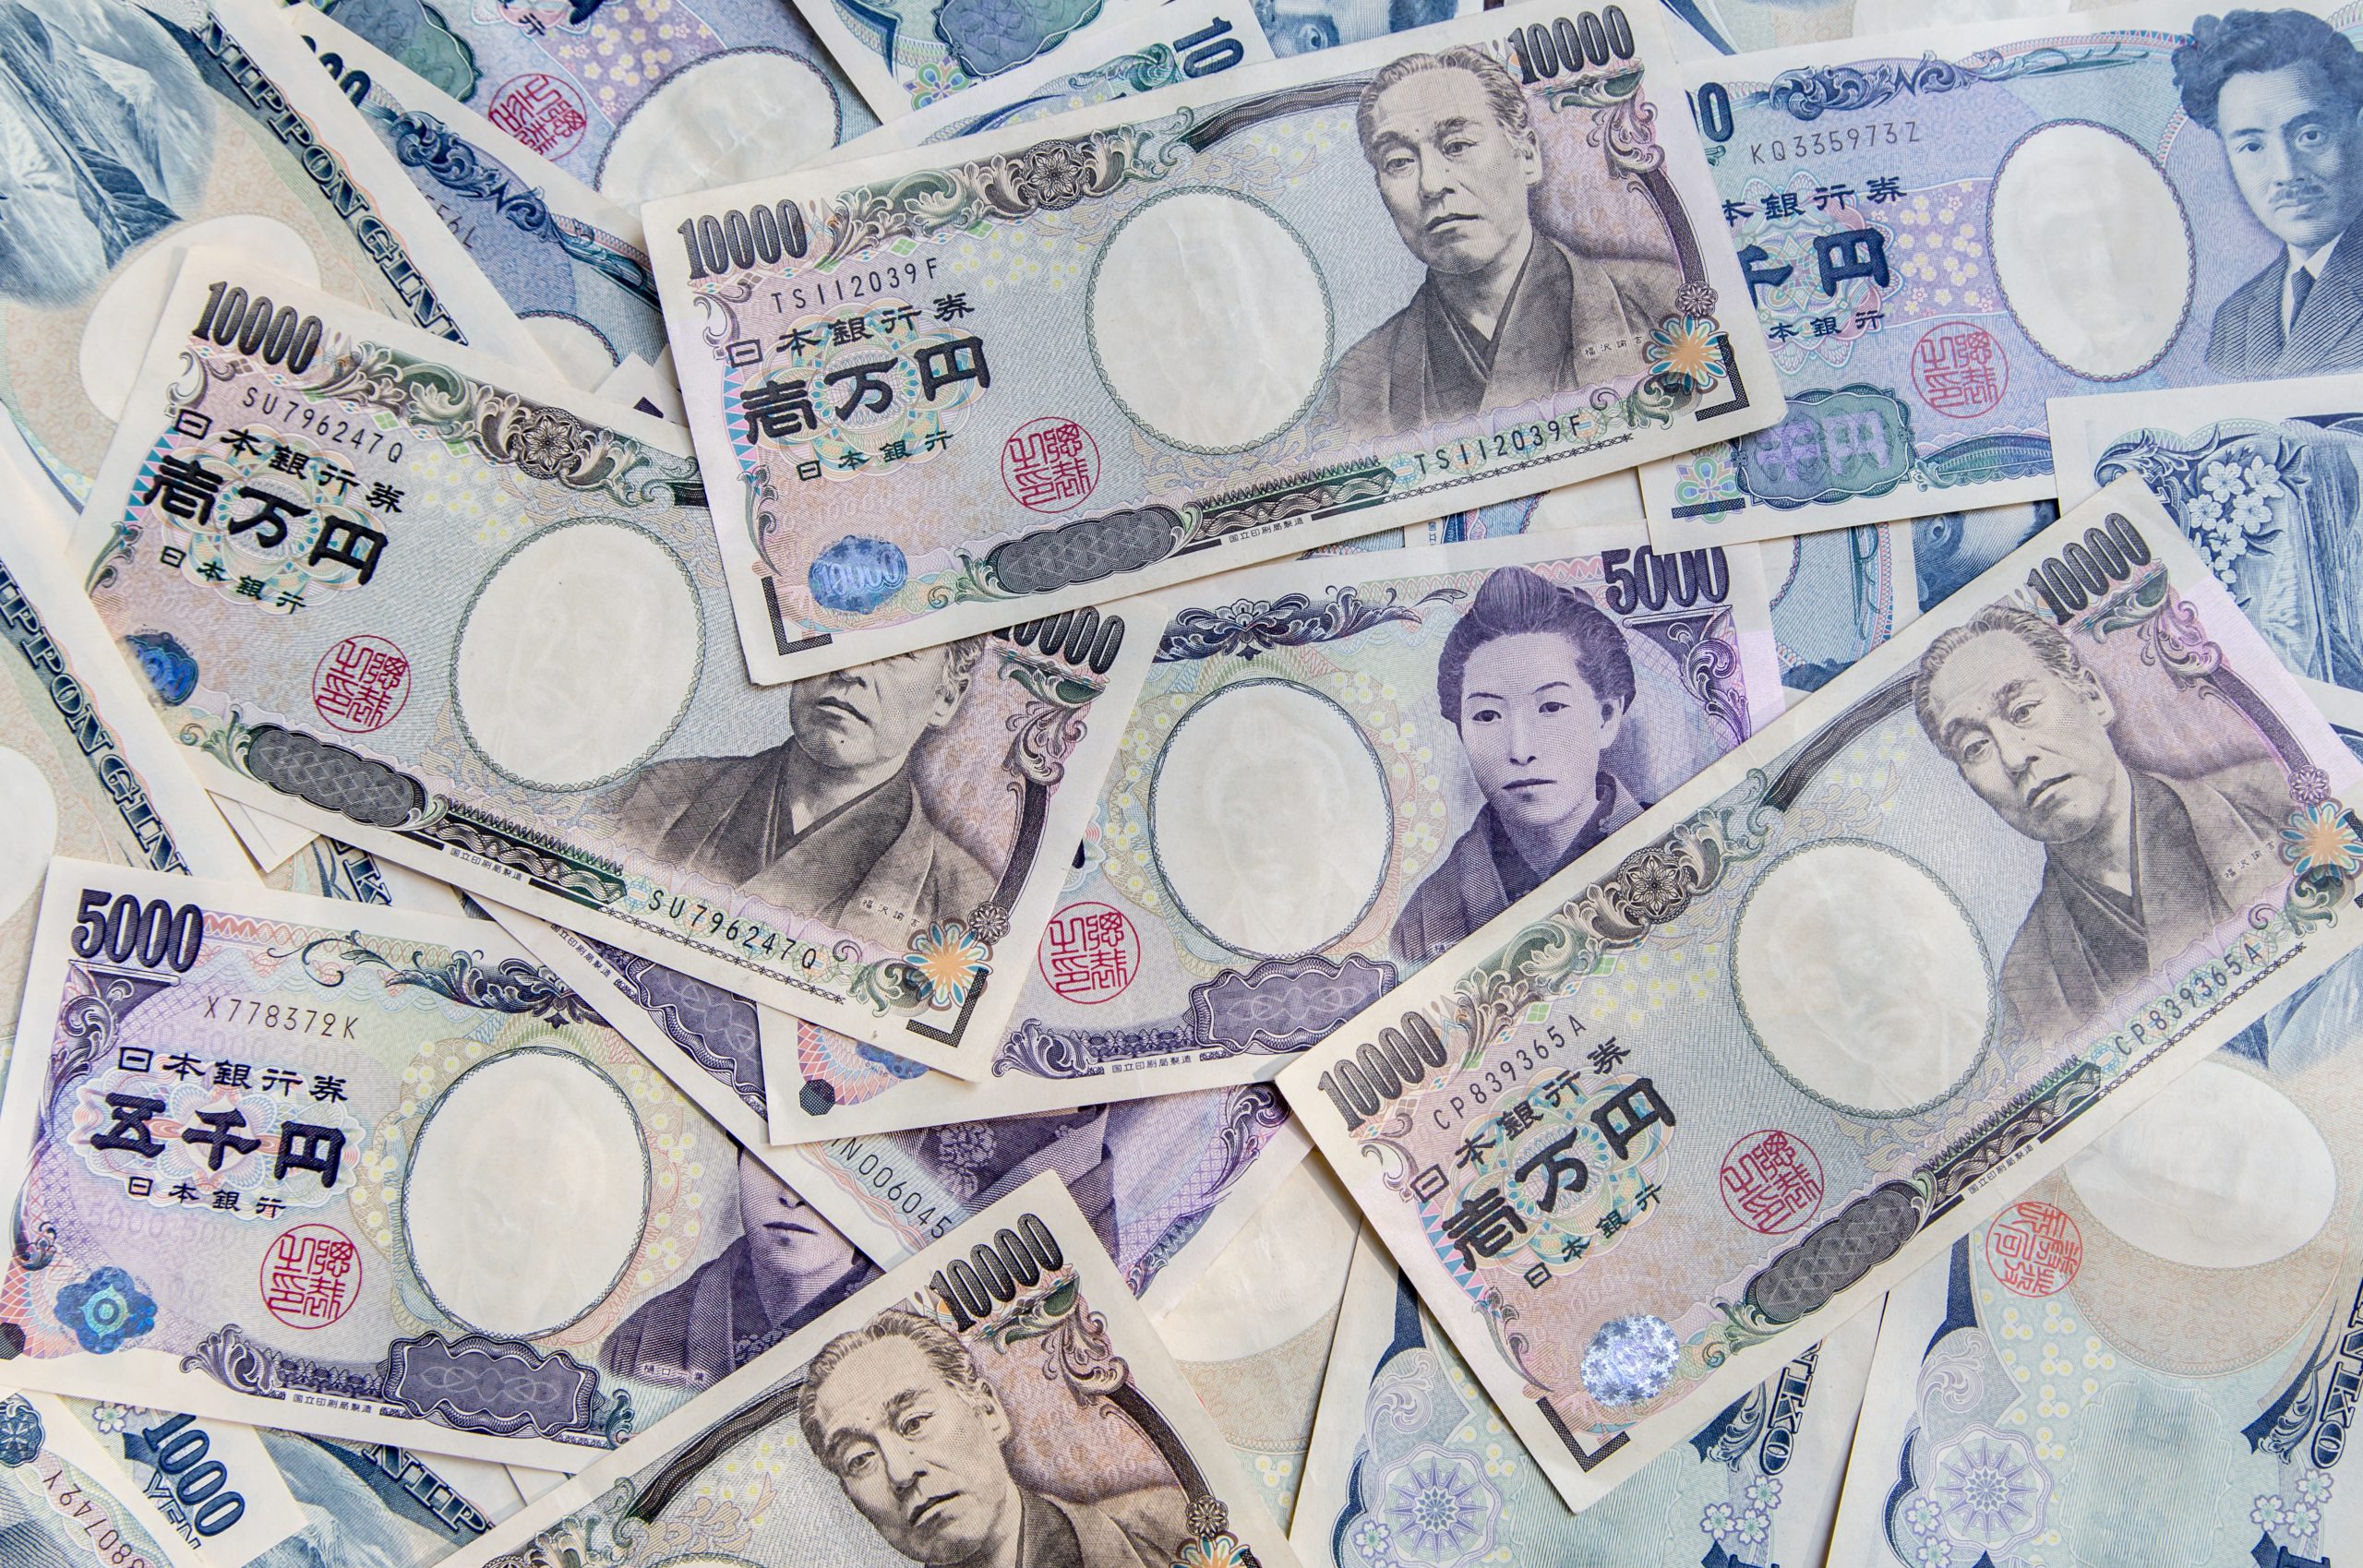 日本円はまだ底を見つけていない